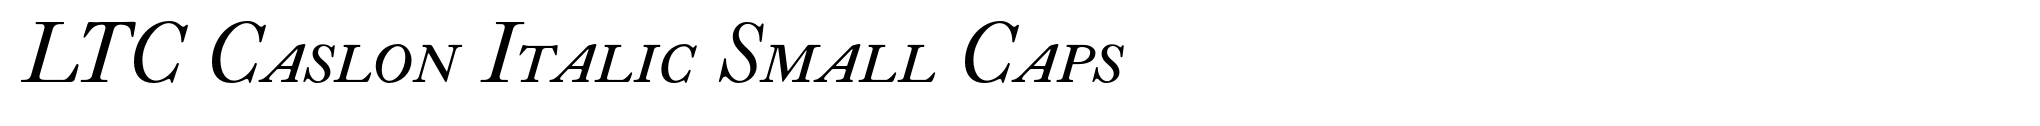 LTC Caslon Italic Small Caps image